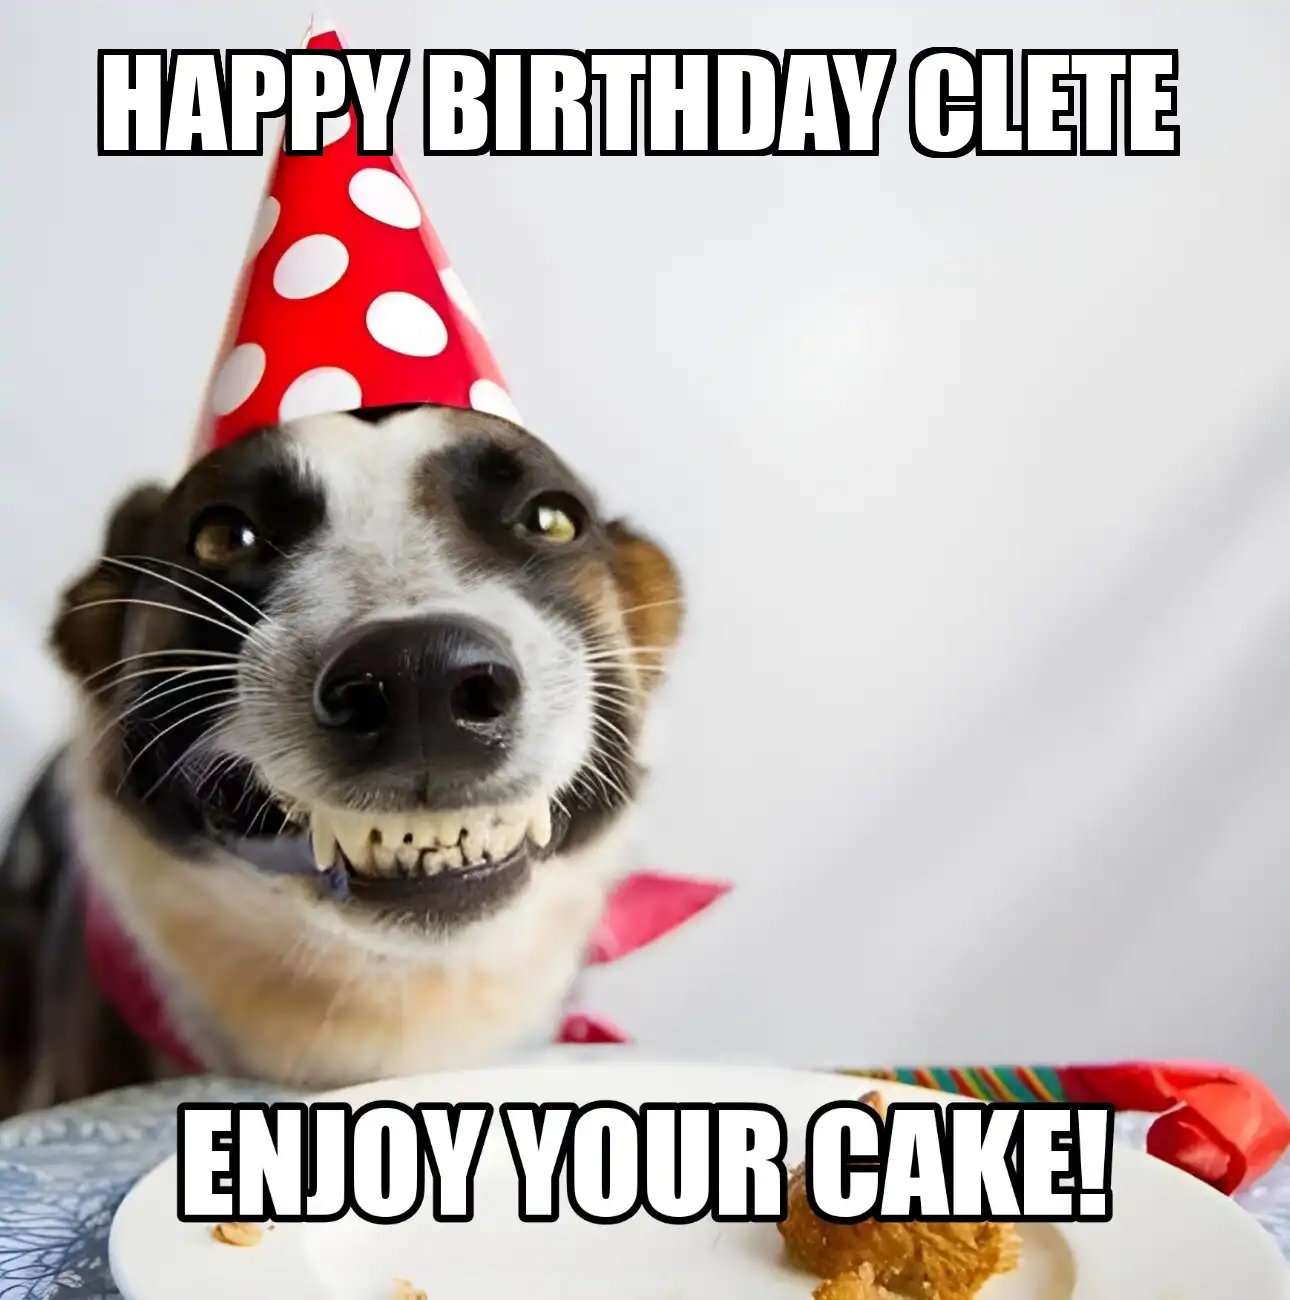 Happy Birthday Clete Enjoy Your Cake Dog Meme